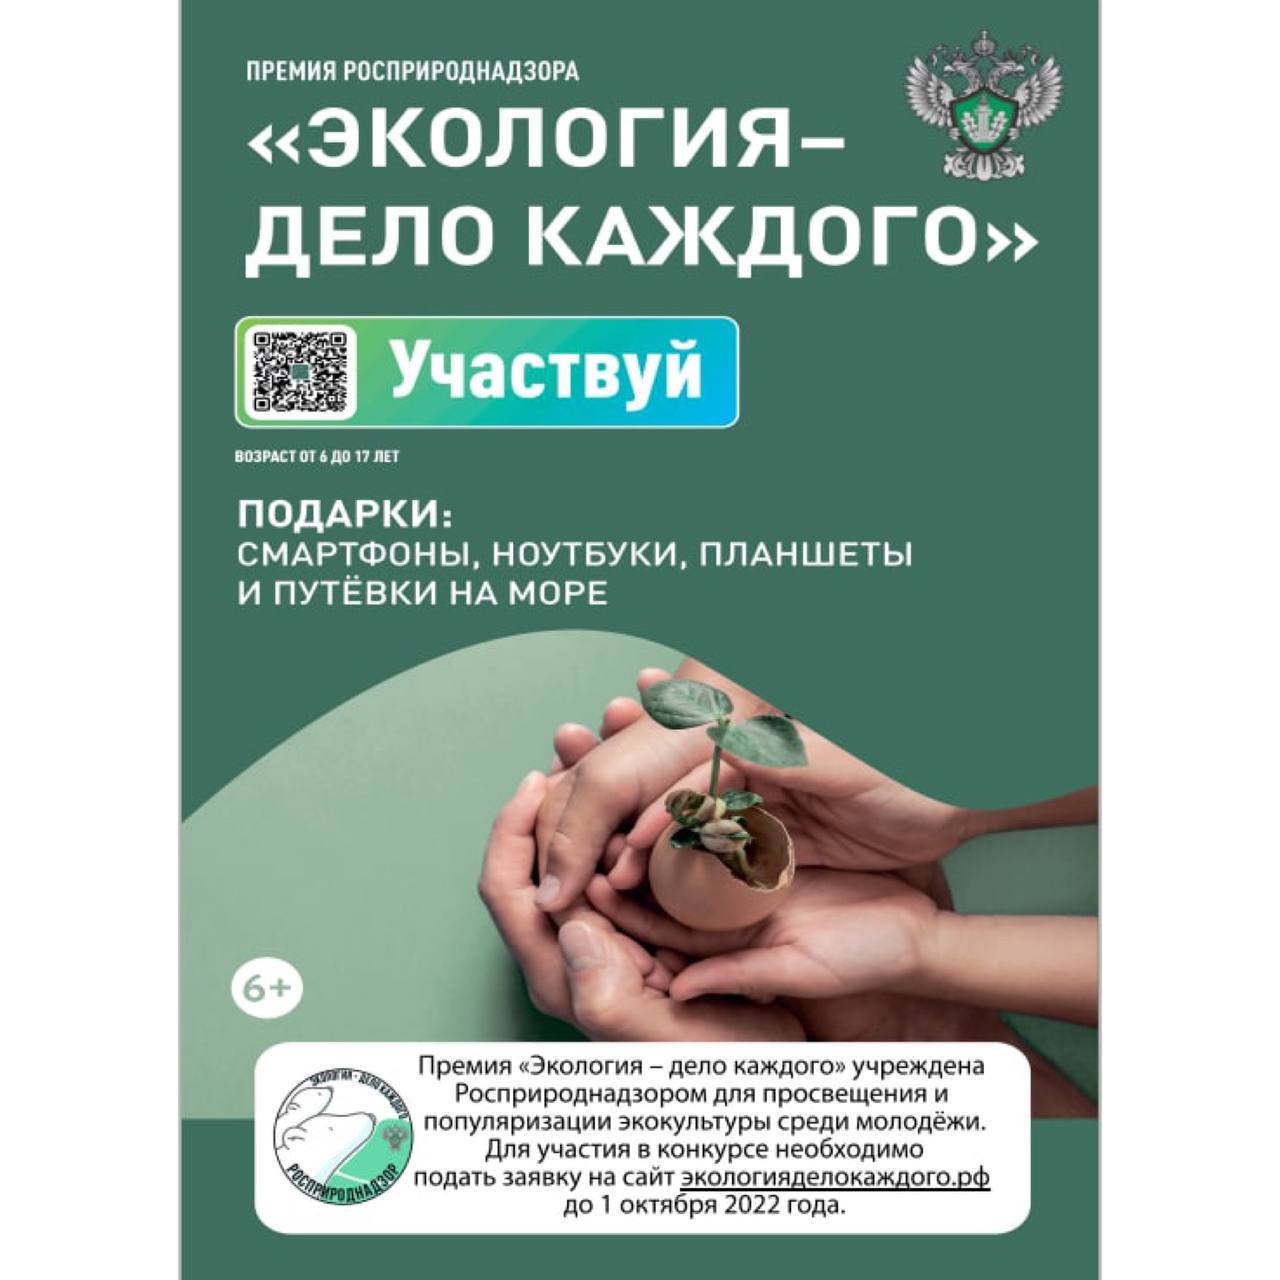 Продолжается прием заявок на участие в международной детско-юношеской премии «Экология - дело каждого» в Челябинской области